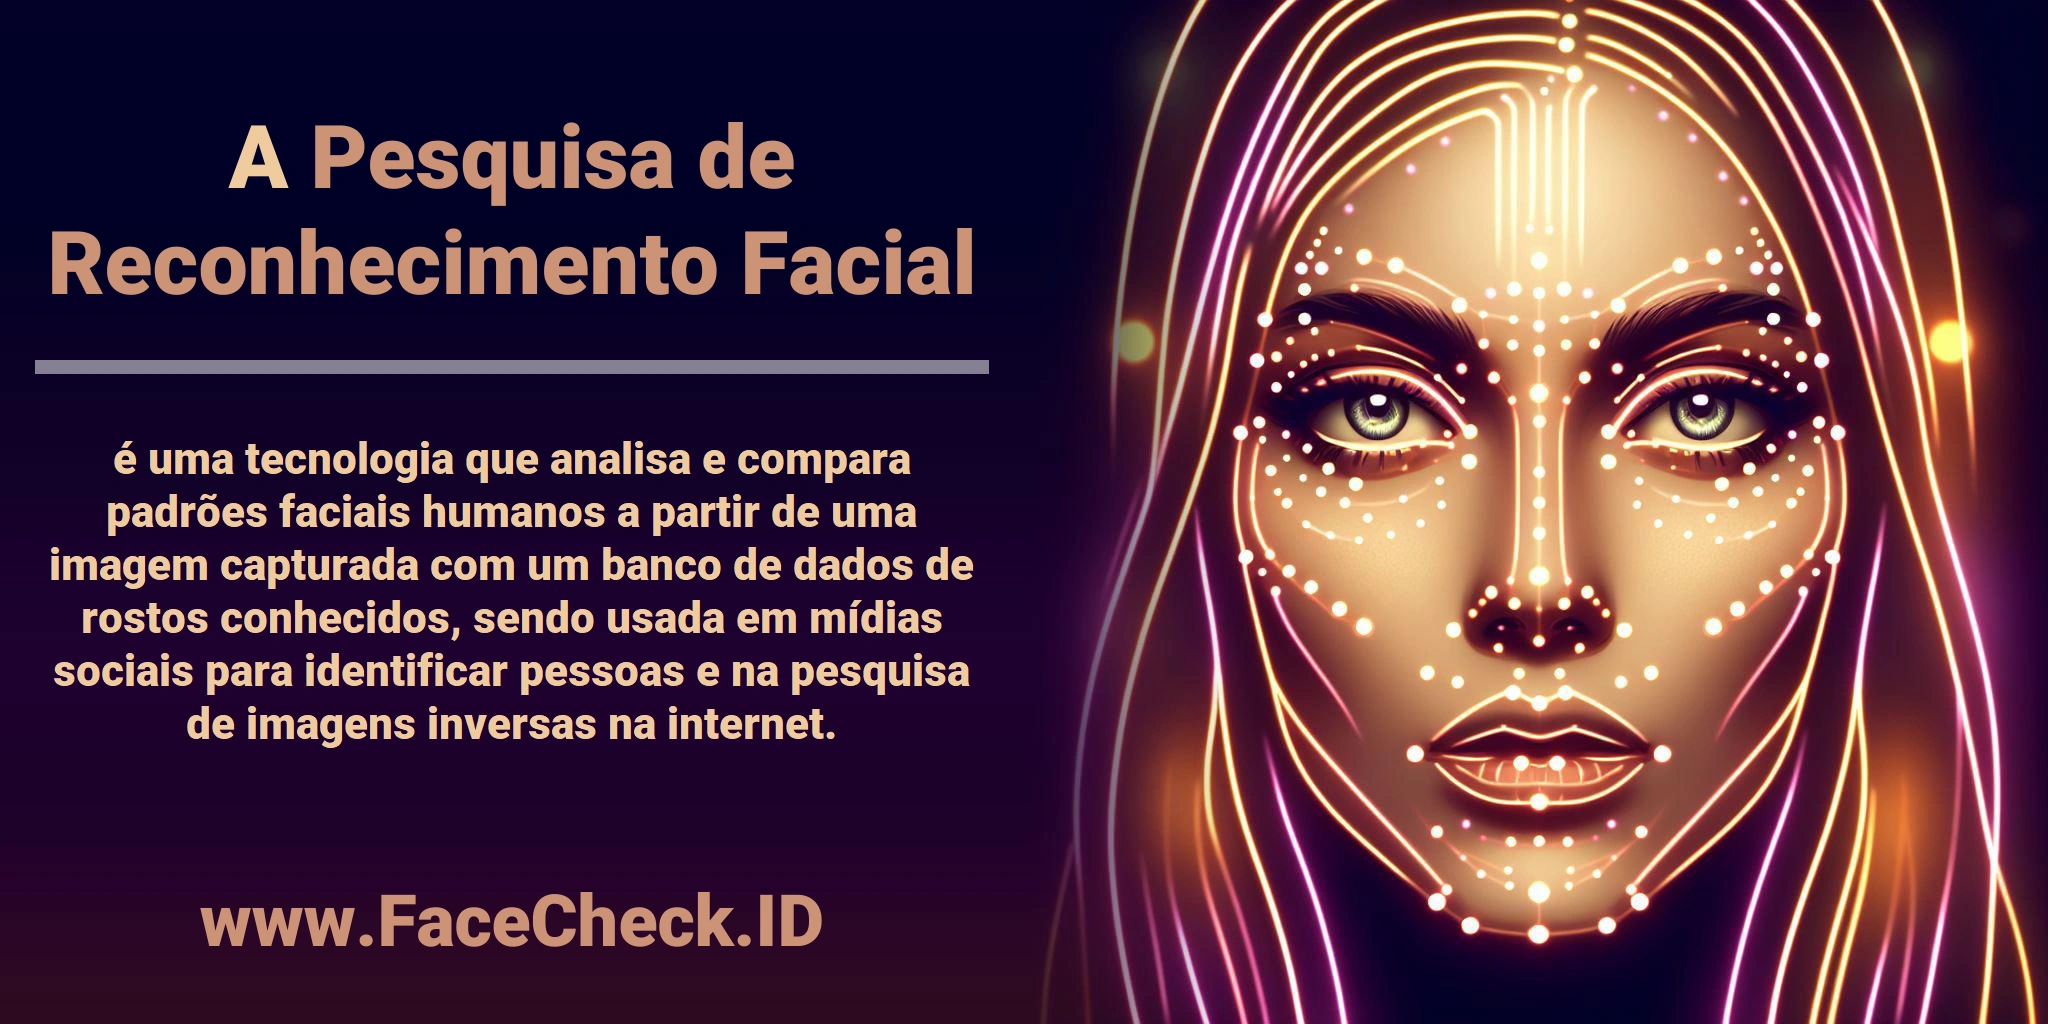 A <b>Pesquisa de Reconhecimento Facial</b> é uma tecnologia que analisa e compara padrões faciais humanos a partir de uma imagem capturada com um banco de dados de rostos conhecidos, sendo usada em mídias sociais para identificar pessoas e na pesquisa de imagens inversas na internet.